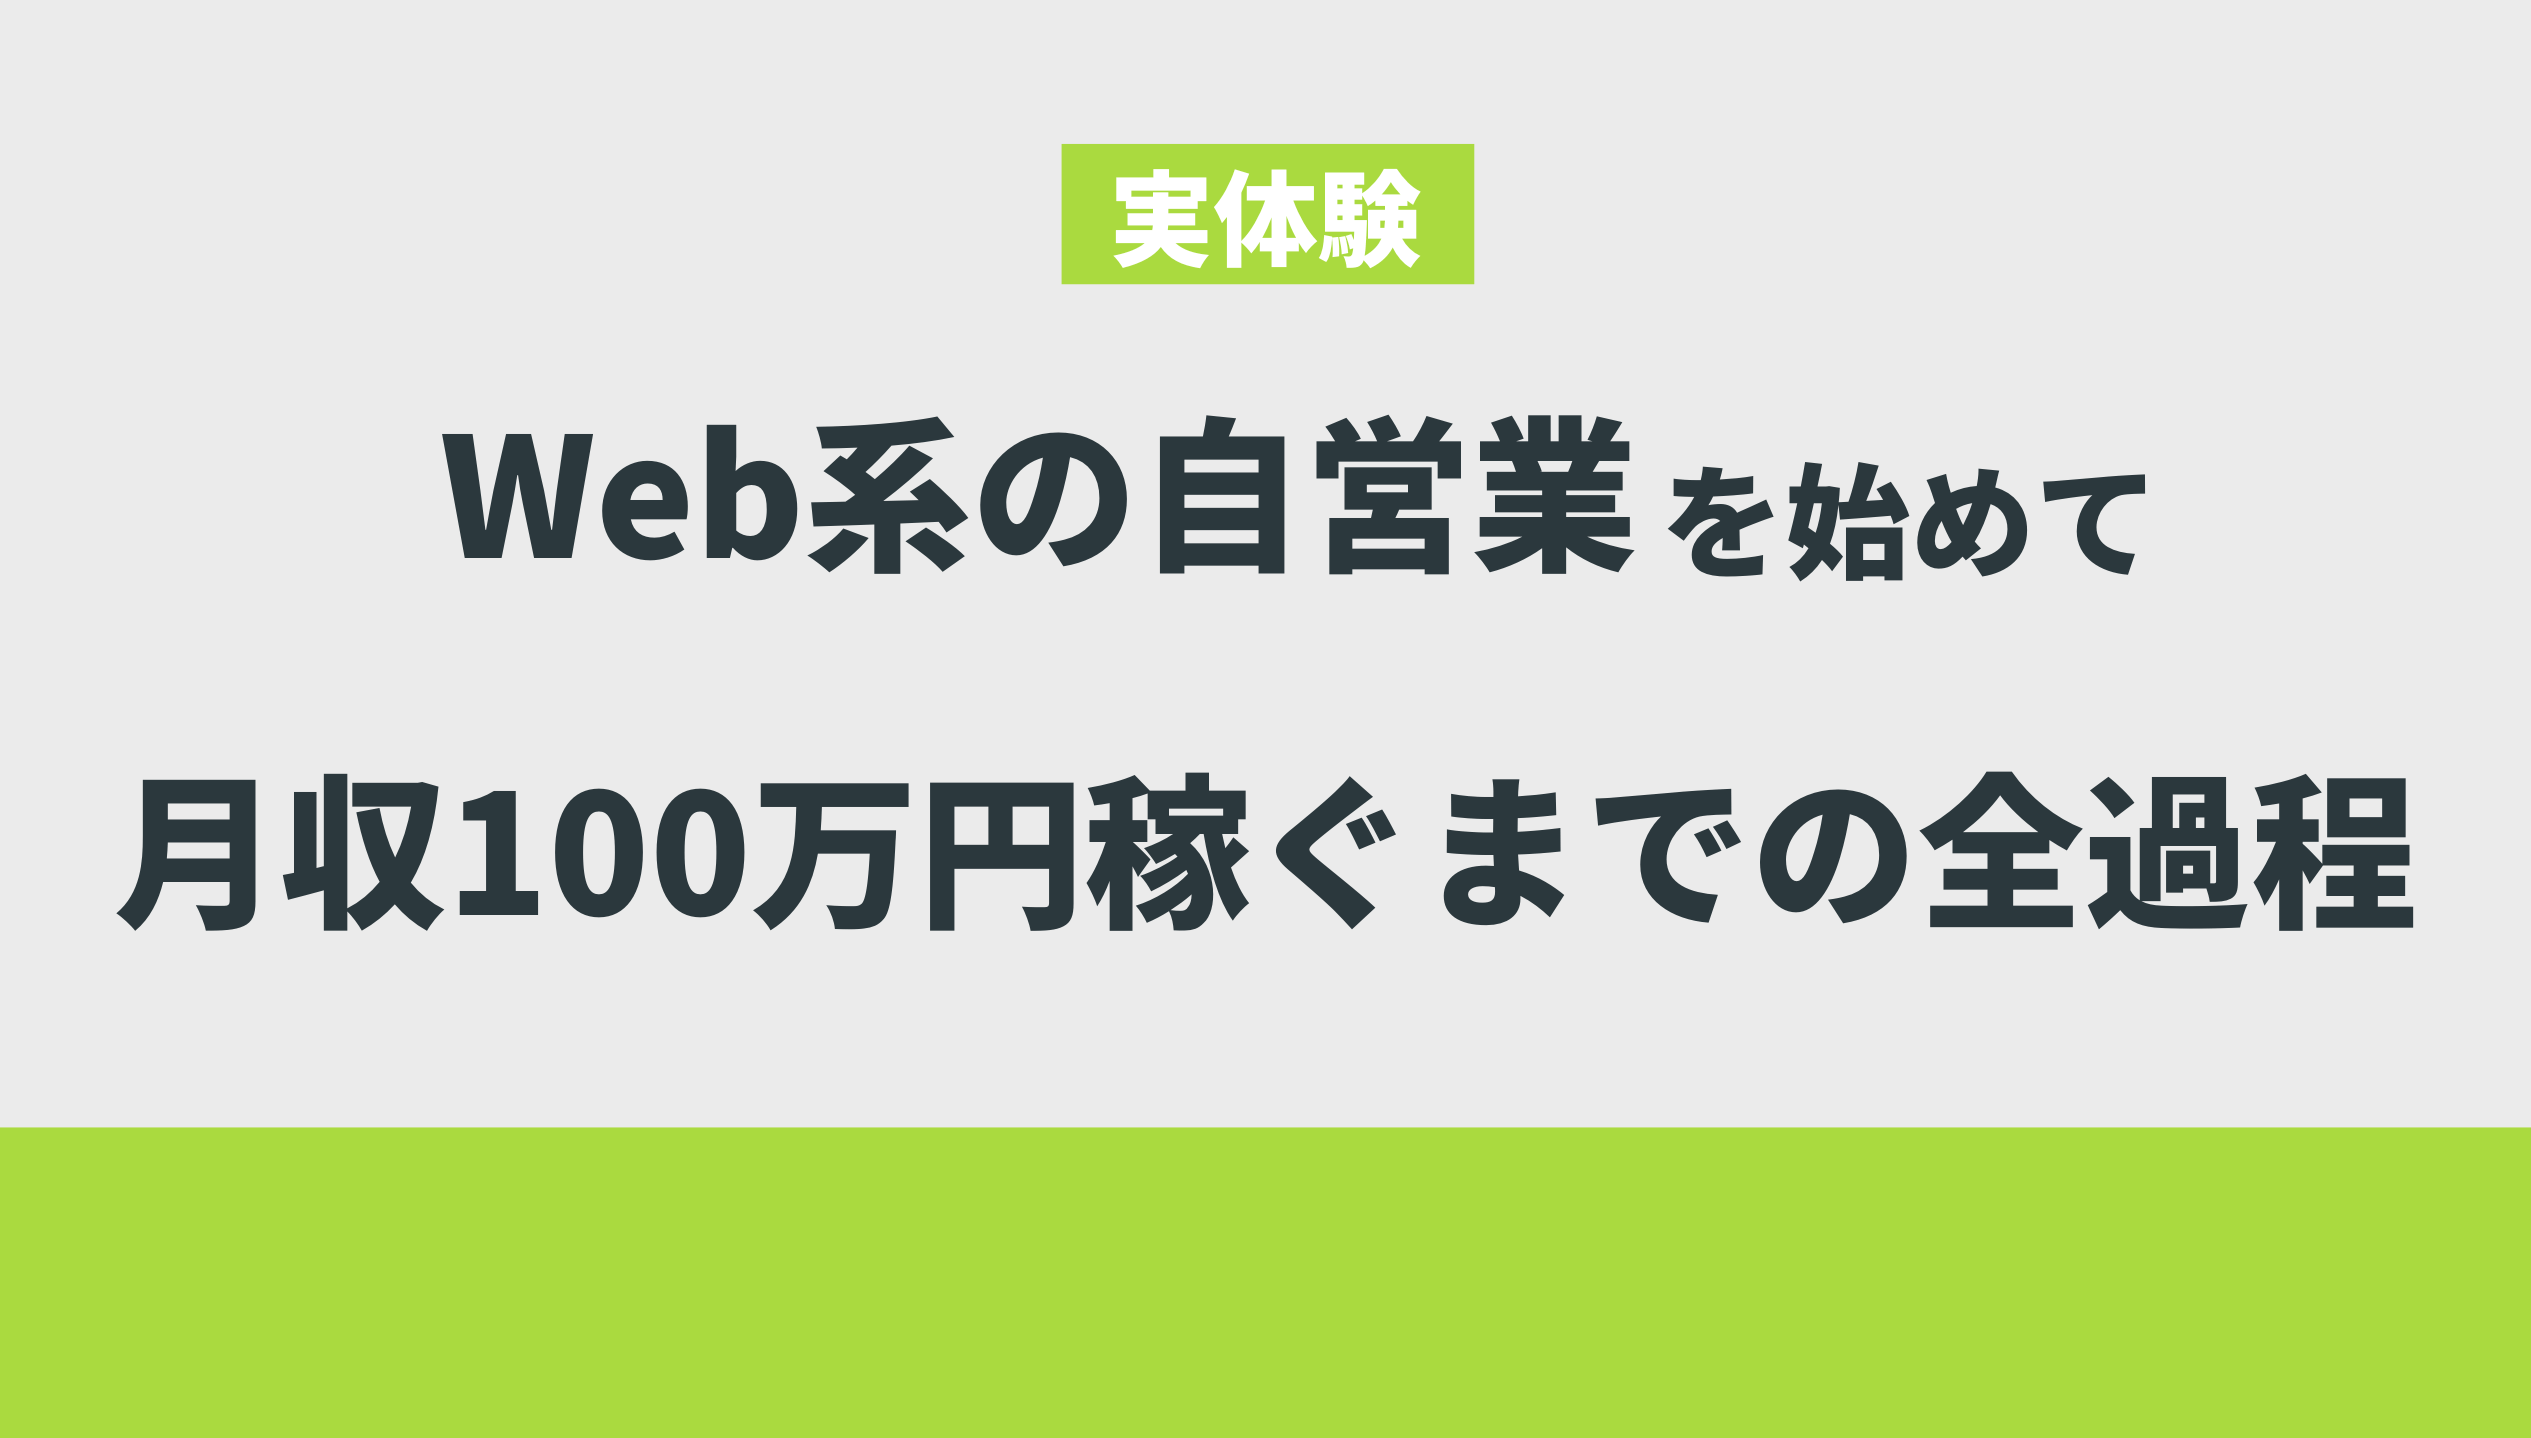 【実体験】Web系の自営業を始めて月収100万円稼ぐまでの全過程